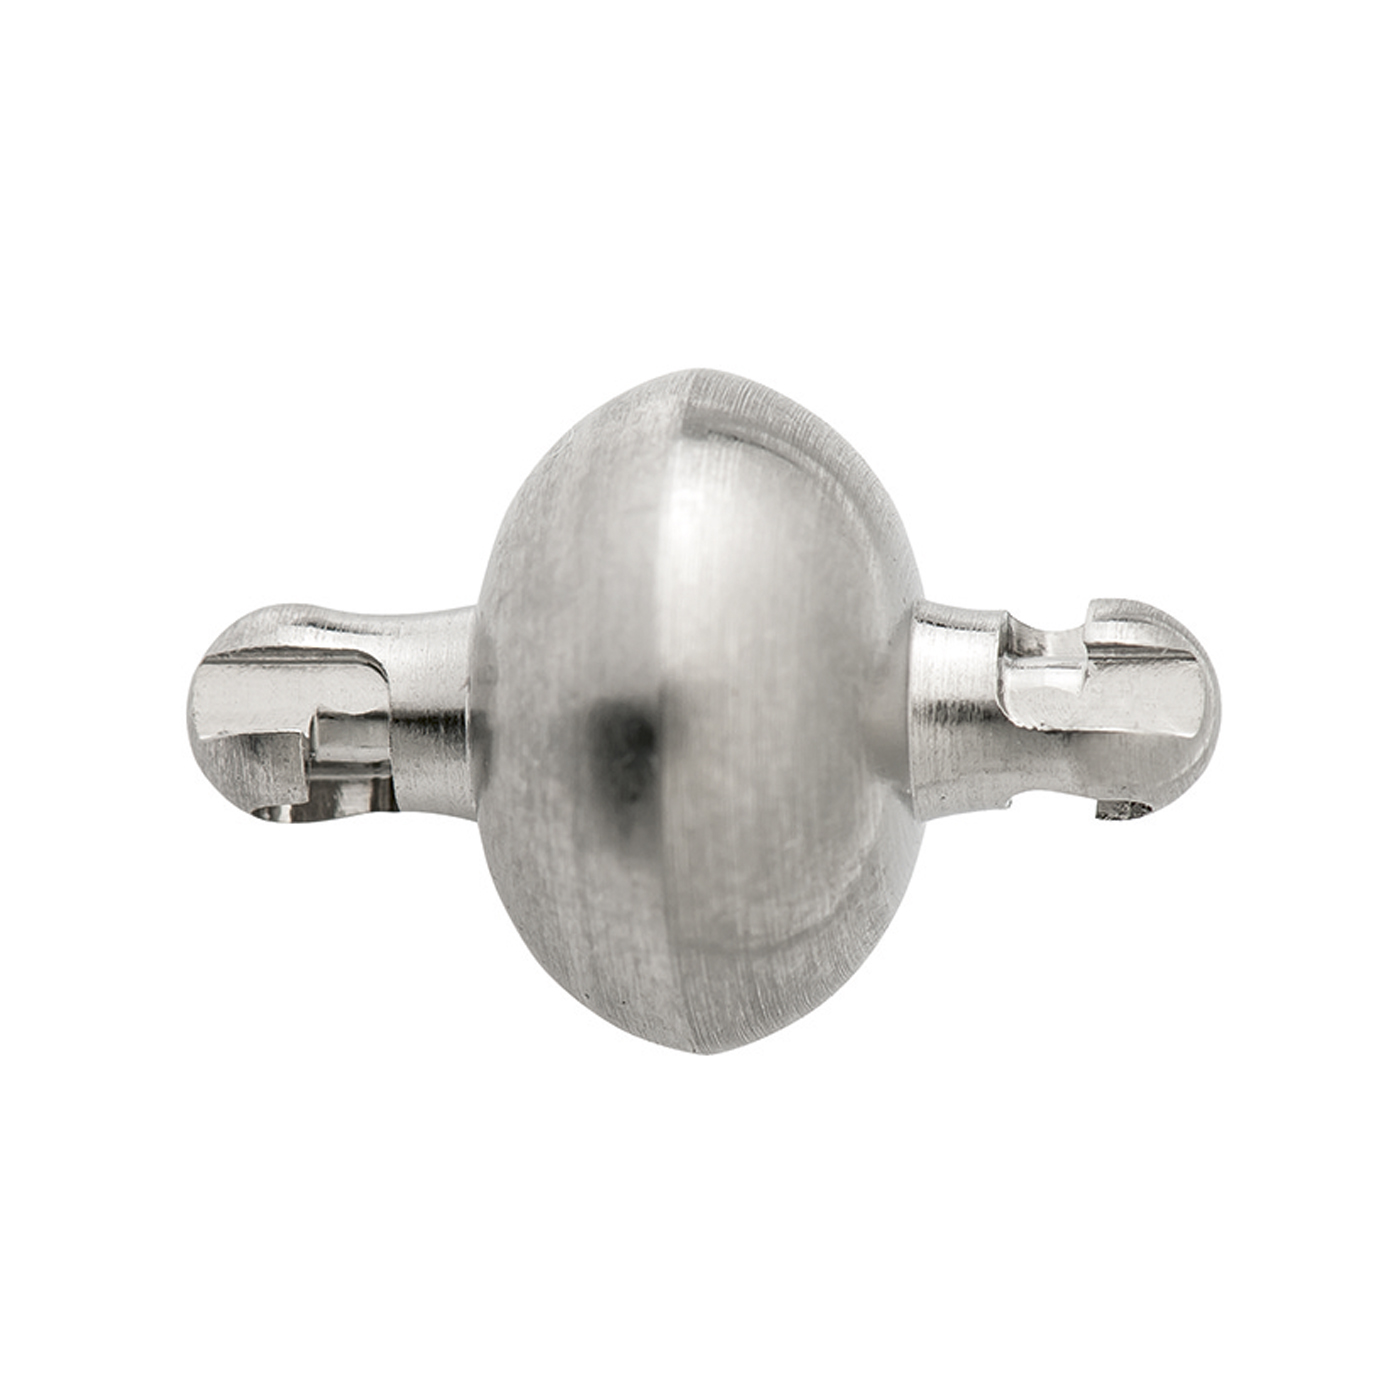 Adapterschlüssel, ES rhod., ø 8 mm, für Kugelkopf-Mechanik - 1 Stück